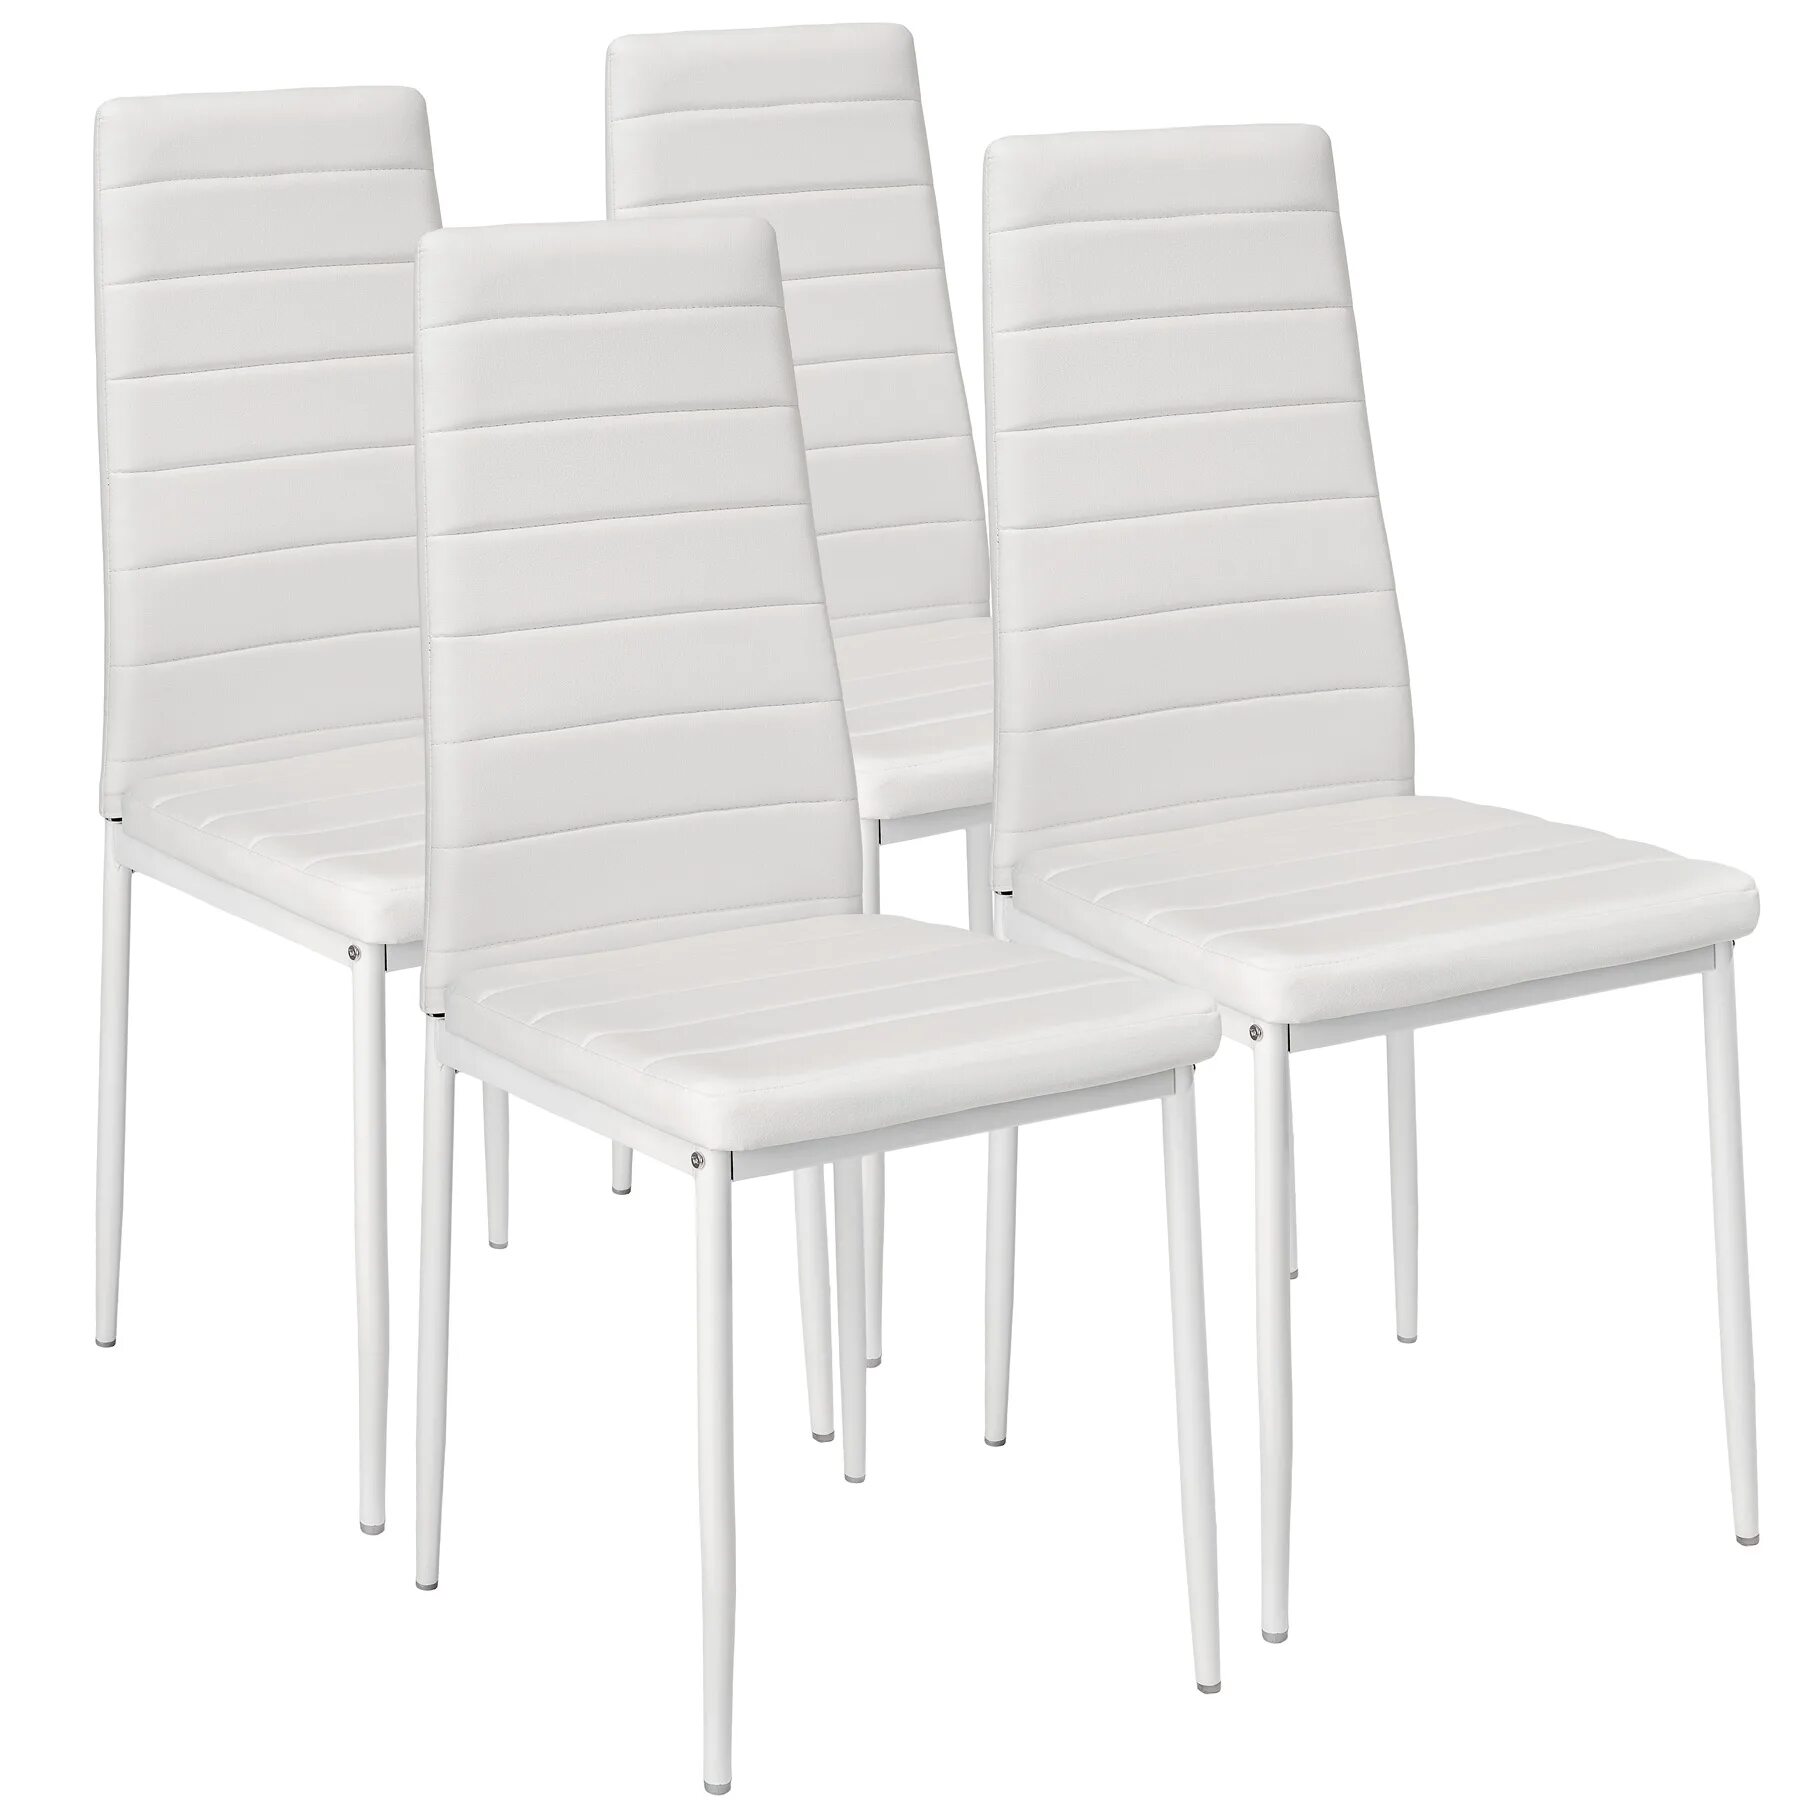 Комплект стульев 4 шт. Stool Group y801-v, белый. Ikea стул кухонный. Стул из экокожи вс-017 2 шт белый. Икеа стулья кухонные мягкие.